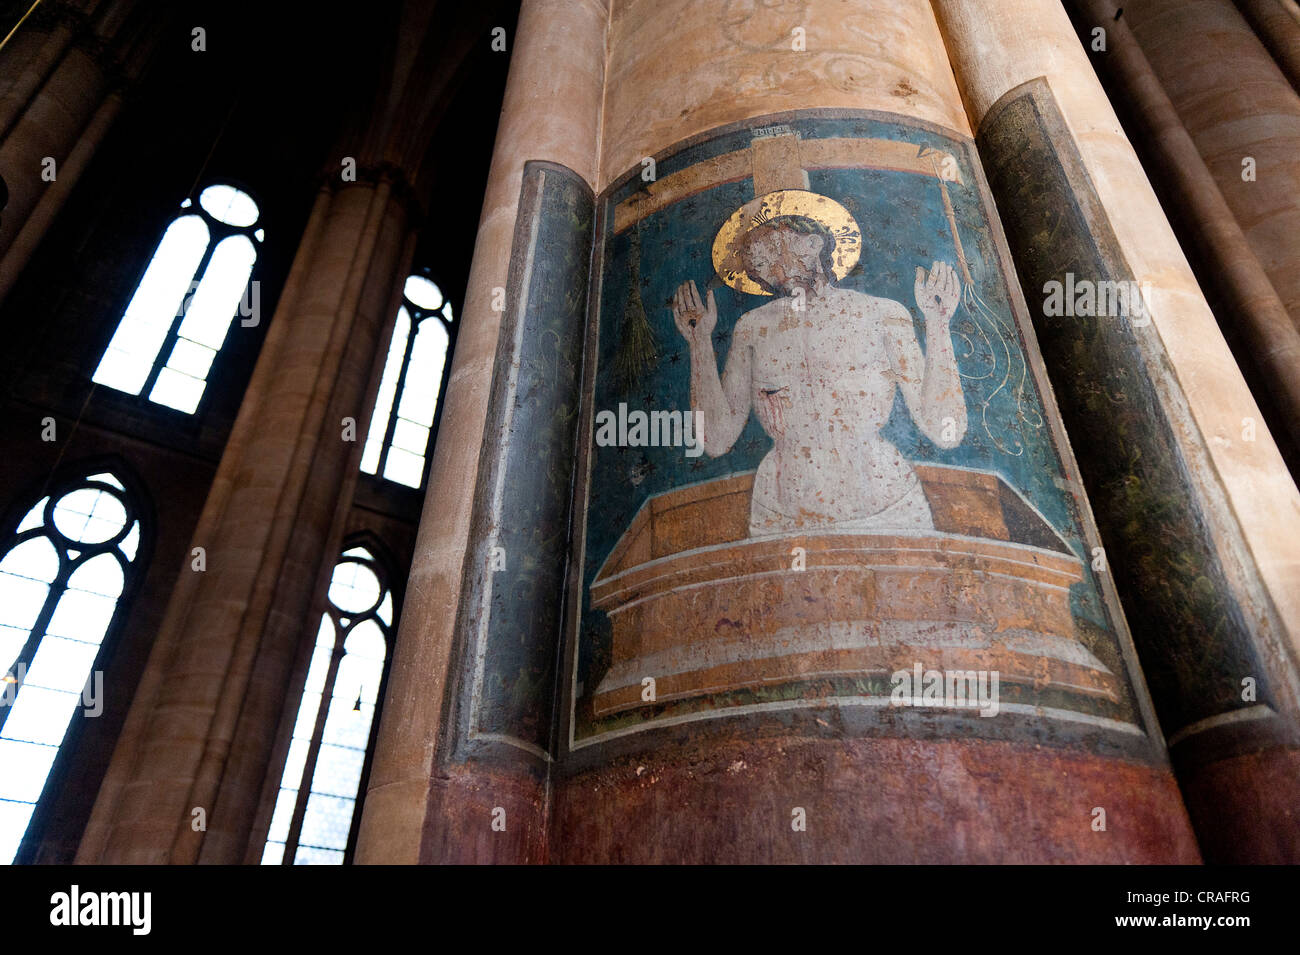 Darstellung Christi, Fresko auf einer Säule, St. Elisabeth Kirche, Marburg, Hessen, Deutschland, Europa Stockfoto